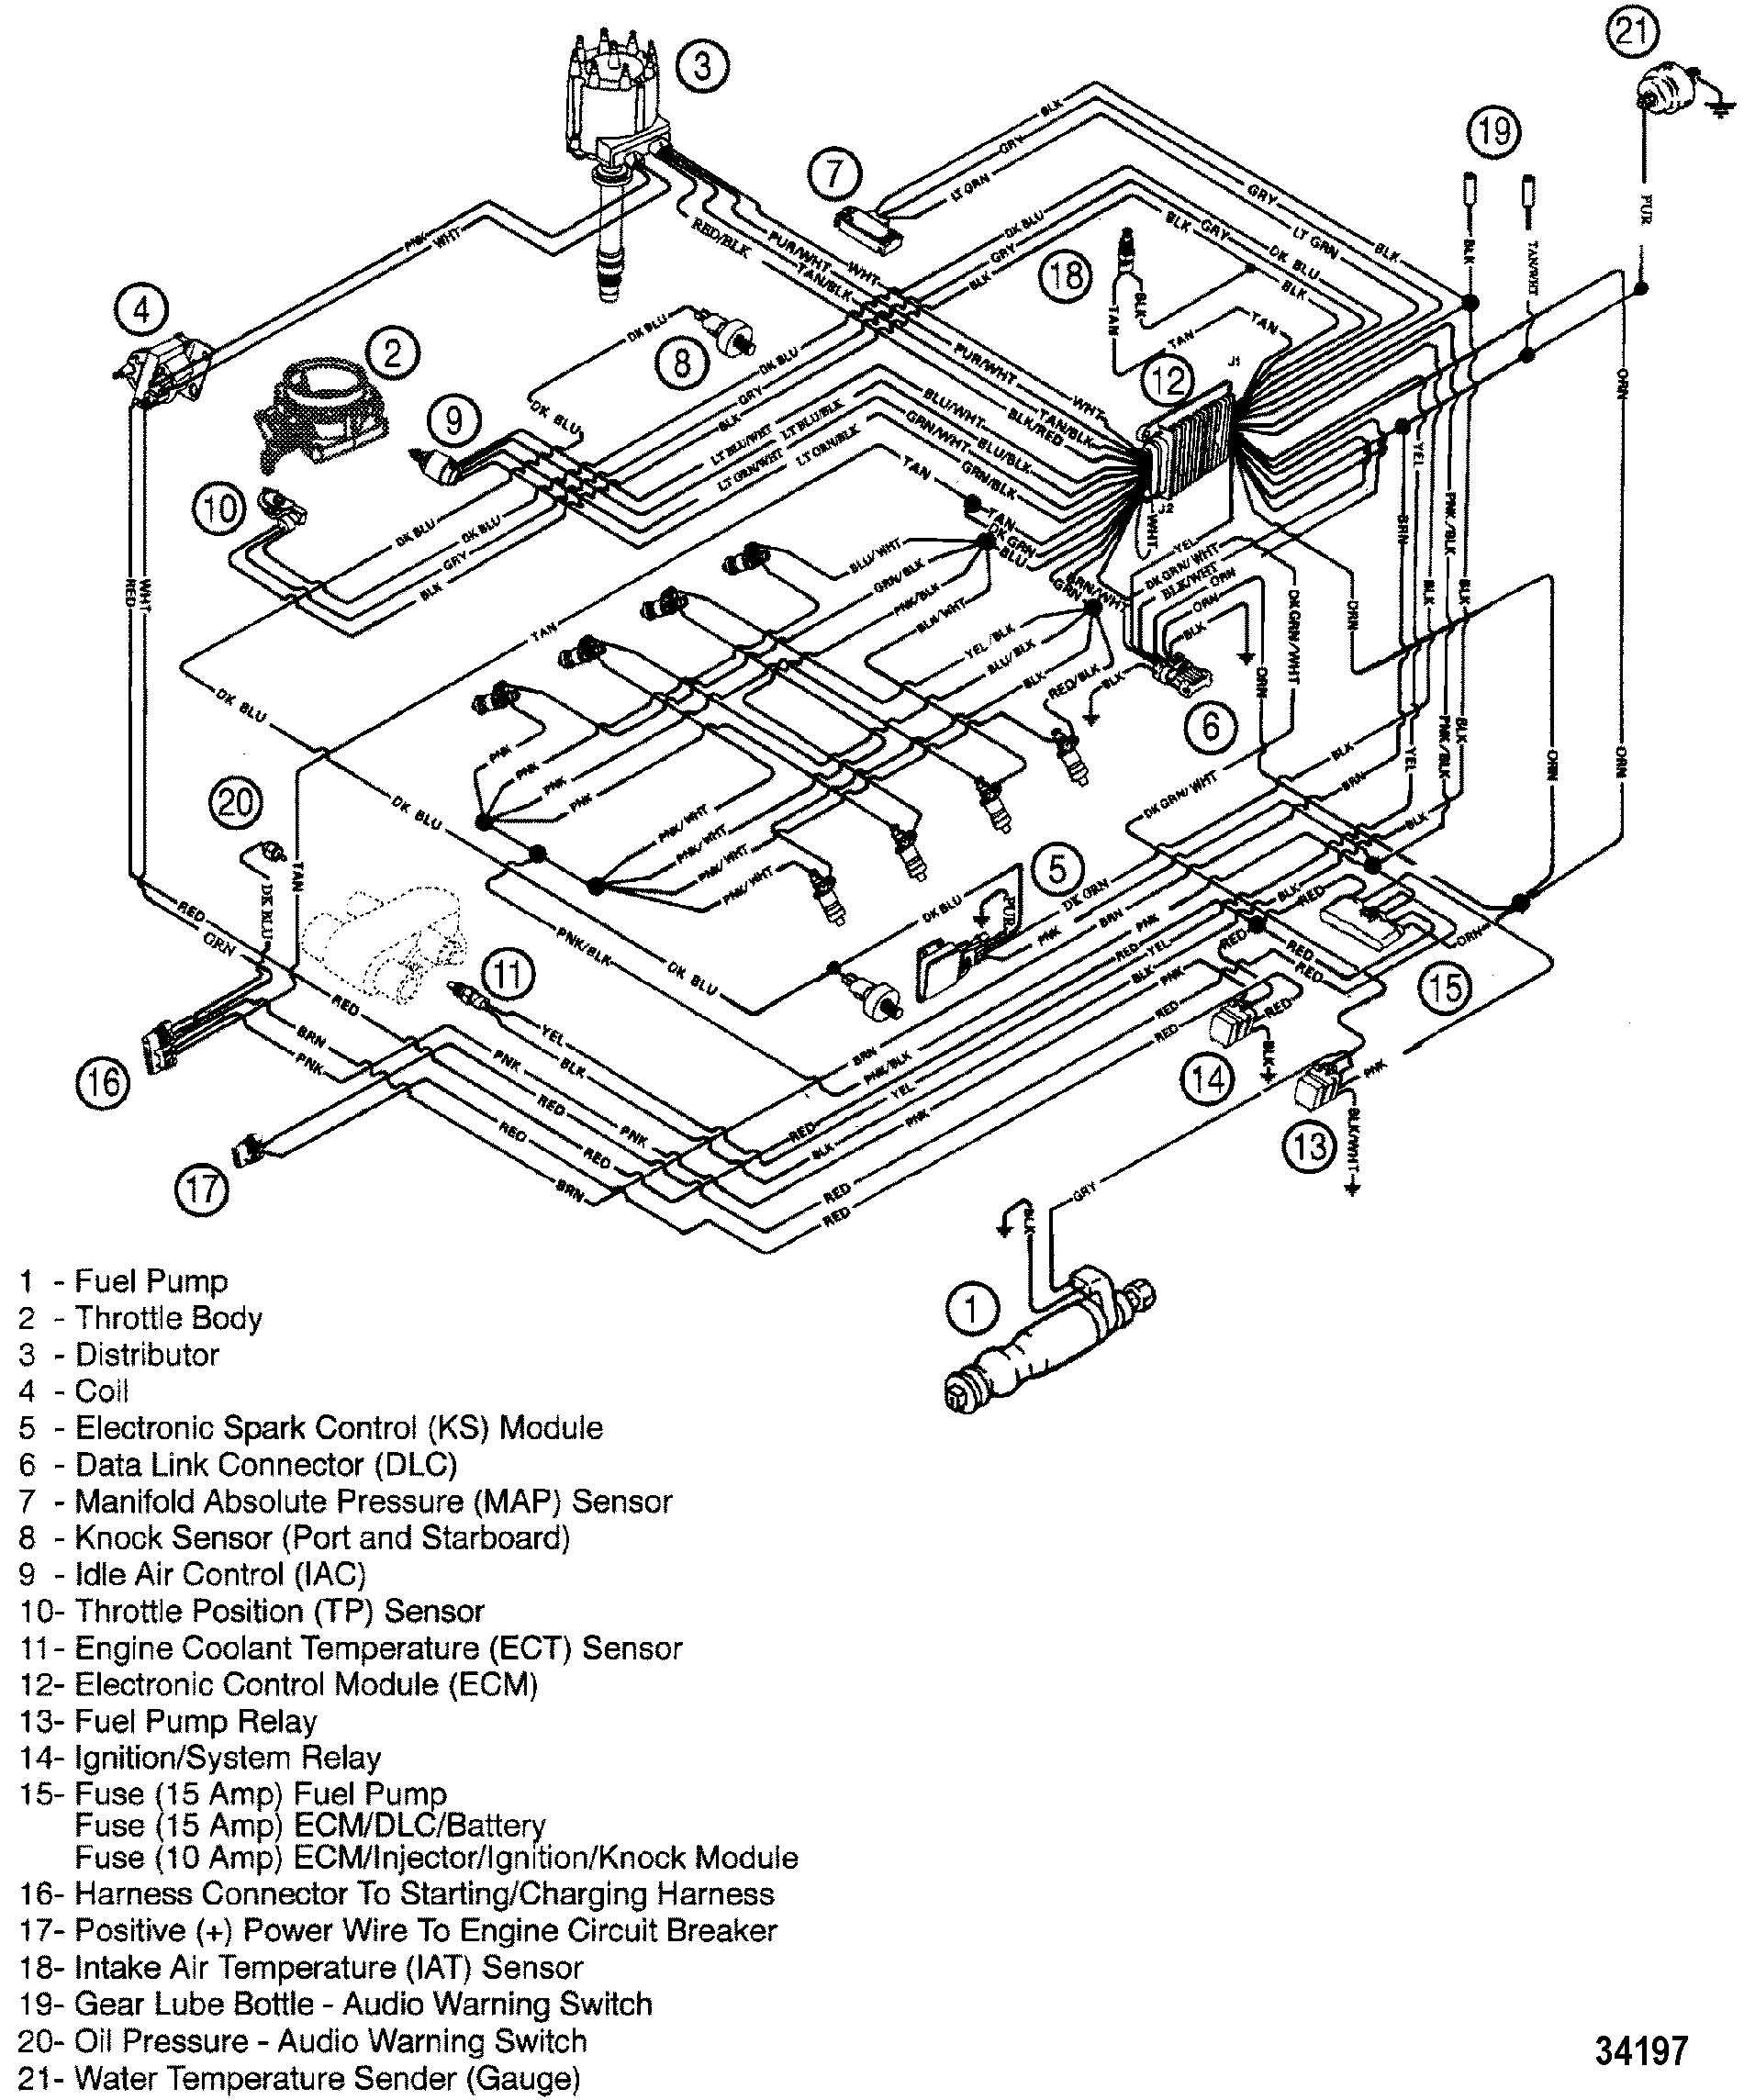 1996 mercruiser 5.7 wiring diagram